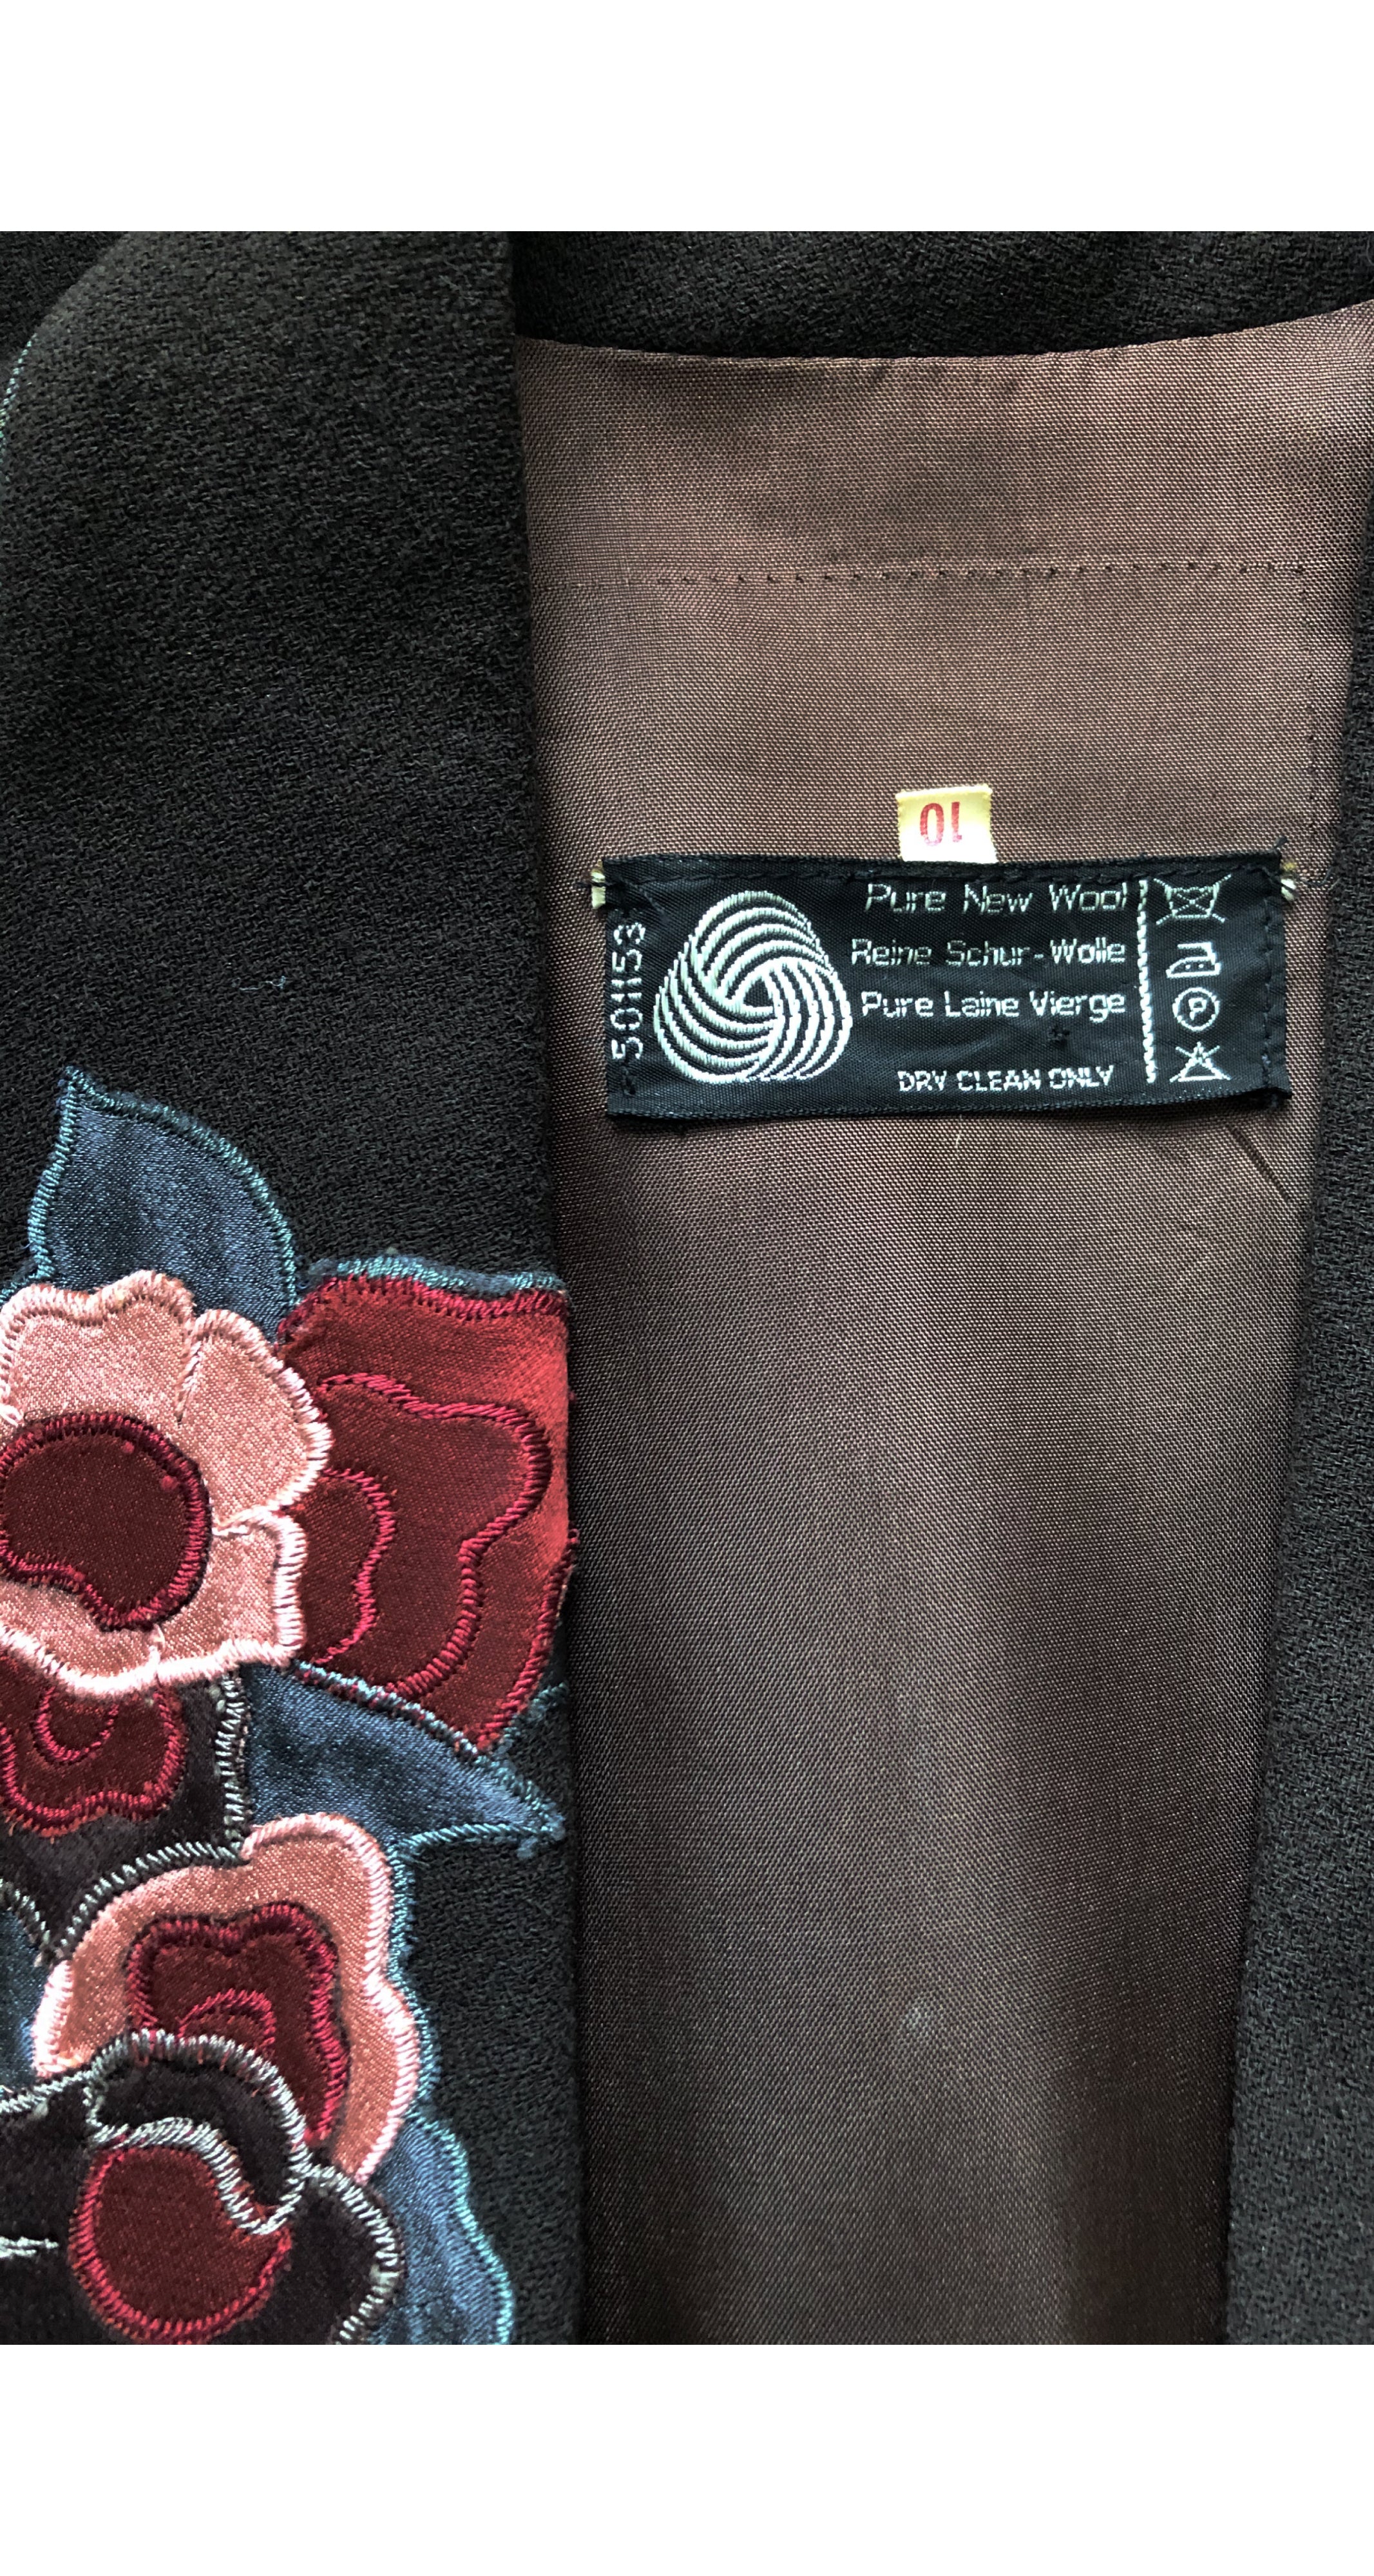 1973 Documented Floral Appliqué Brown Wool Crepe Jacket